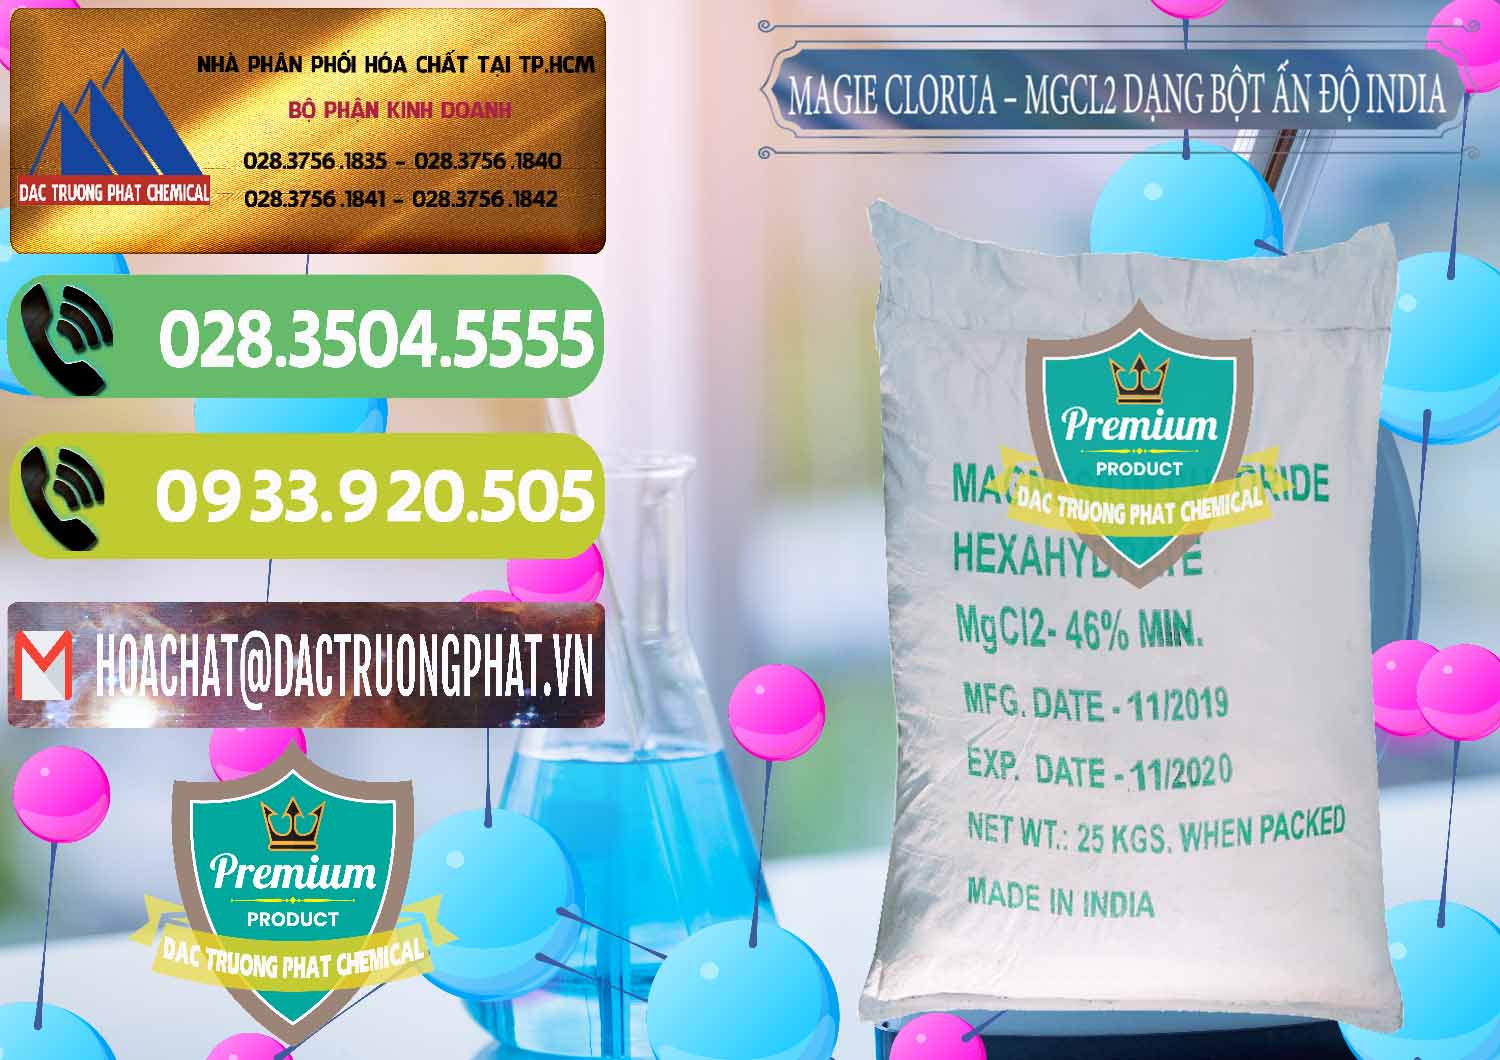 Cty chuyên kinh doanh _ bán Magie Clorua – MGCL2 96% Dạng Bột Ấn Độ India - 0206 - Cty chuyên kinh doanh và phân phối hóa chất tại TP.HCM - hoachatmientay.vn